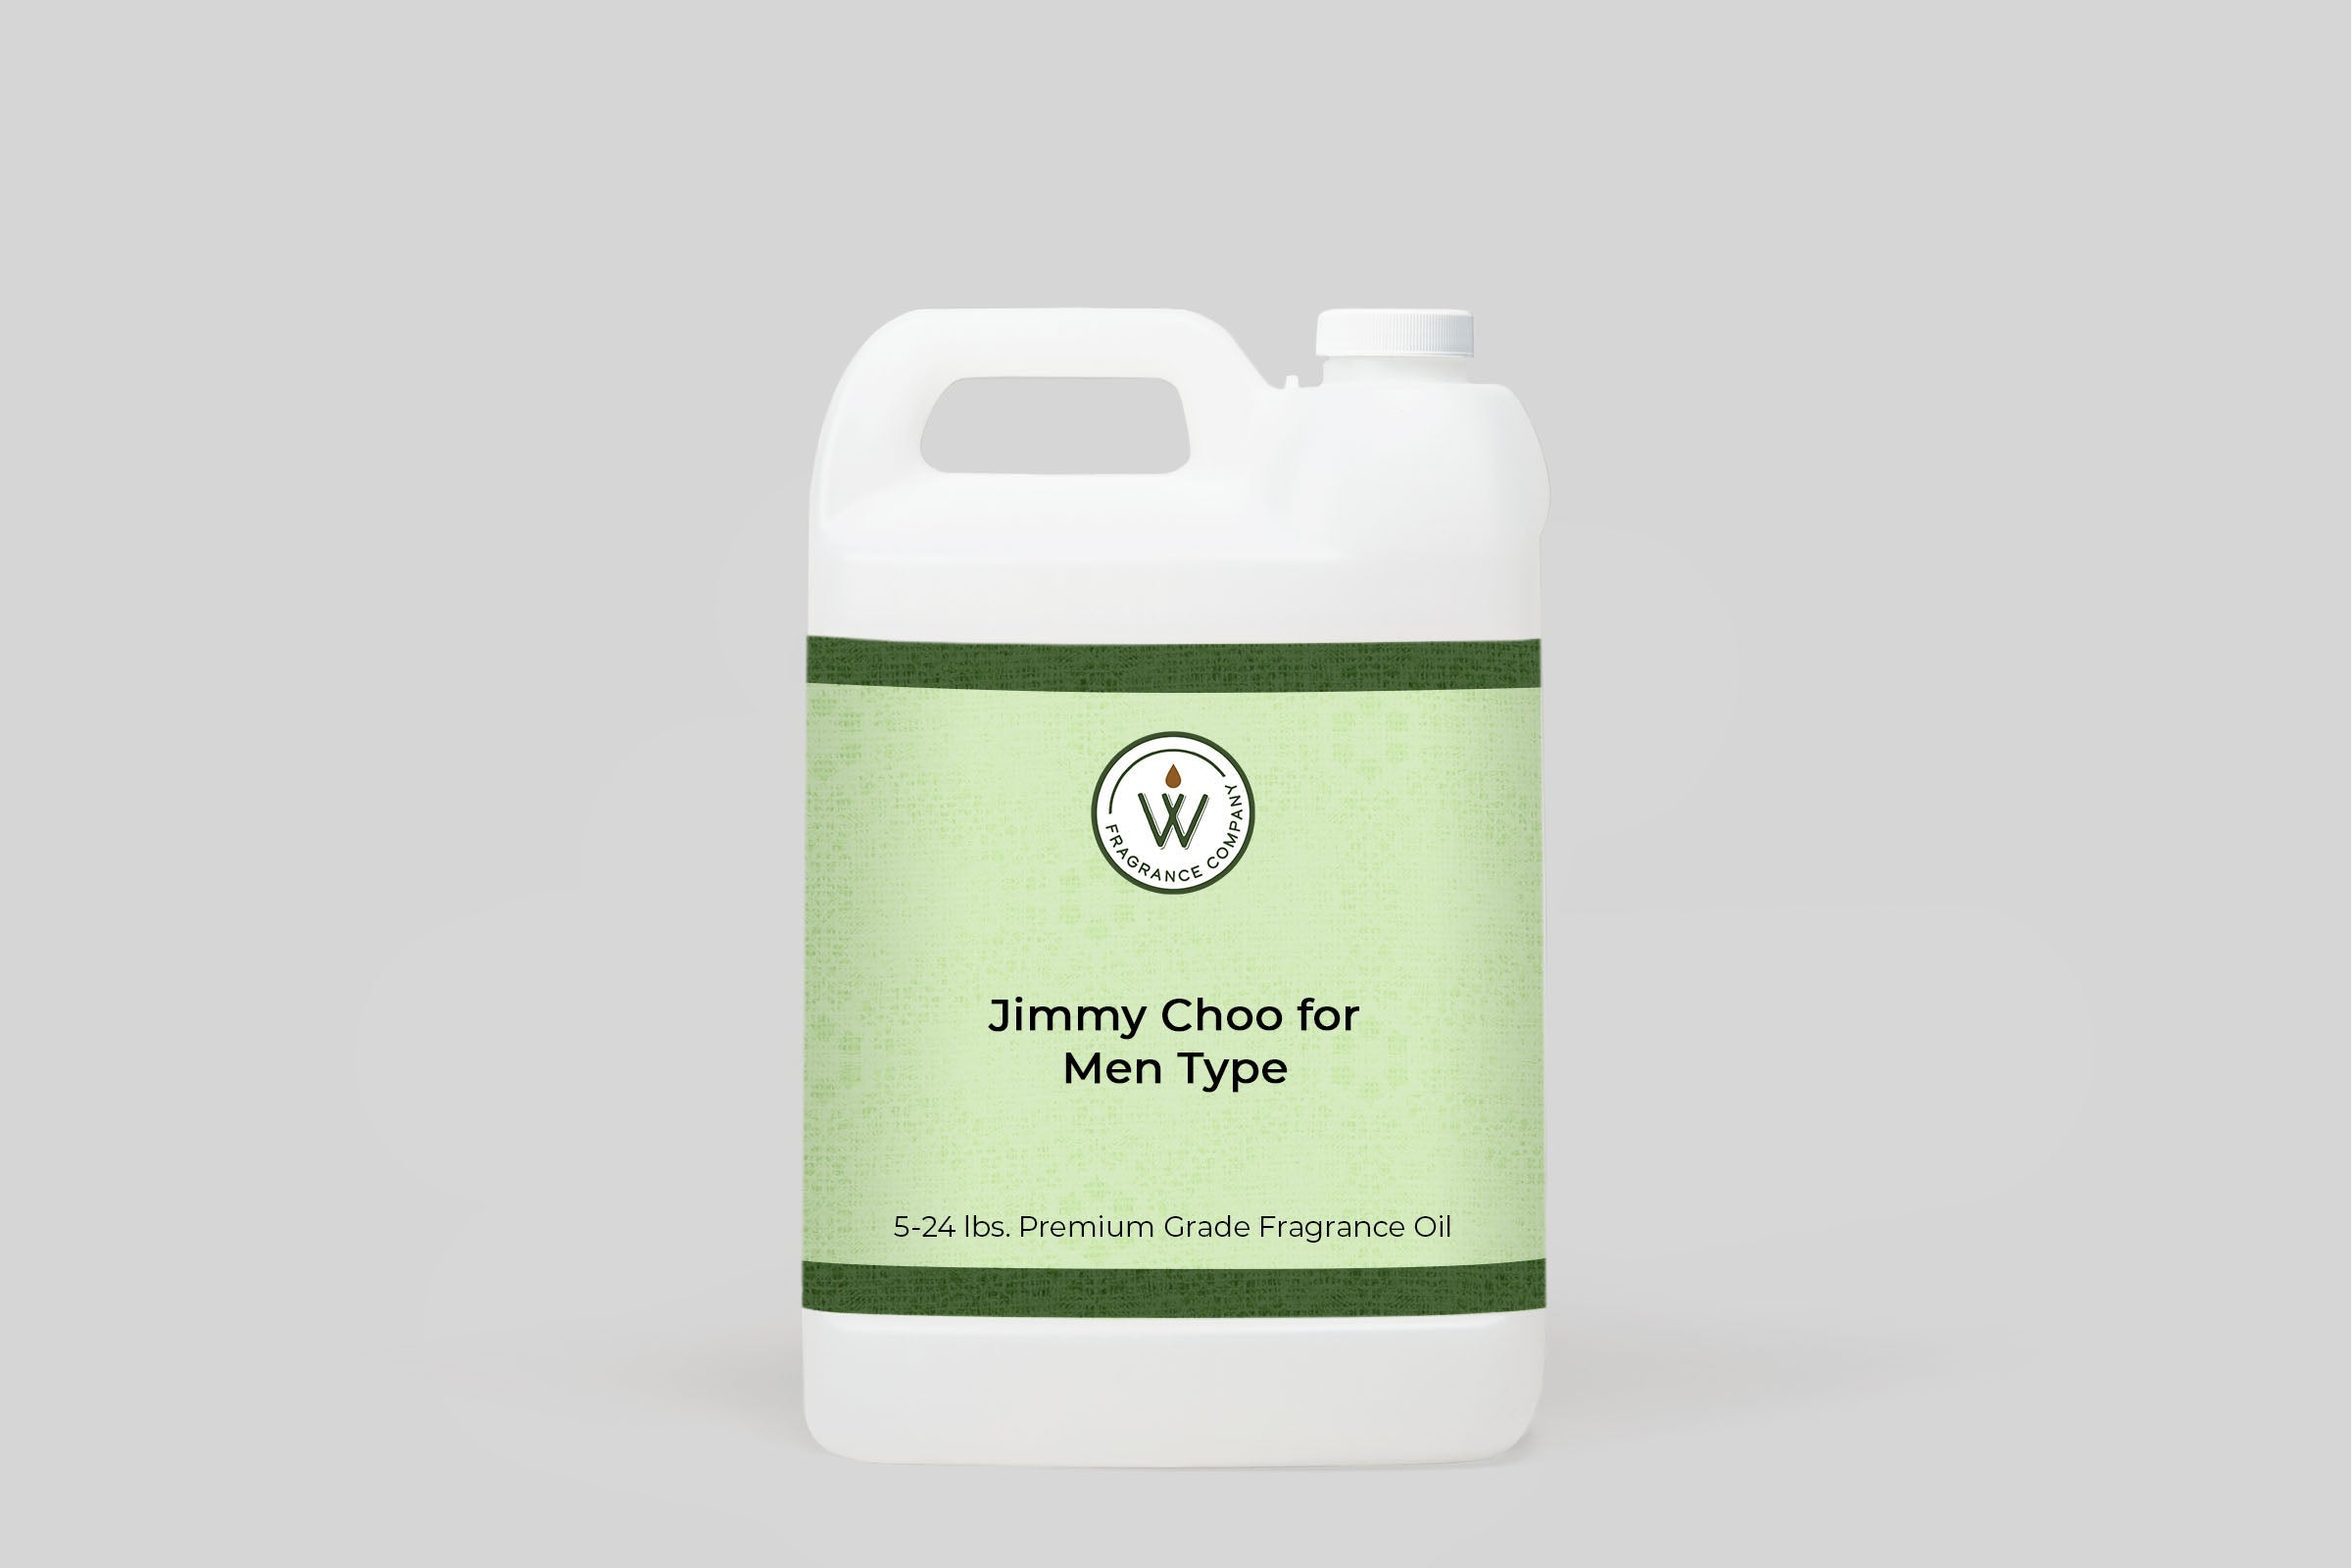 Jimmy Choo for Men Type Fragrance Oil